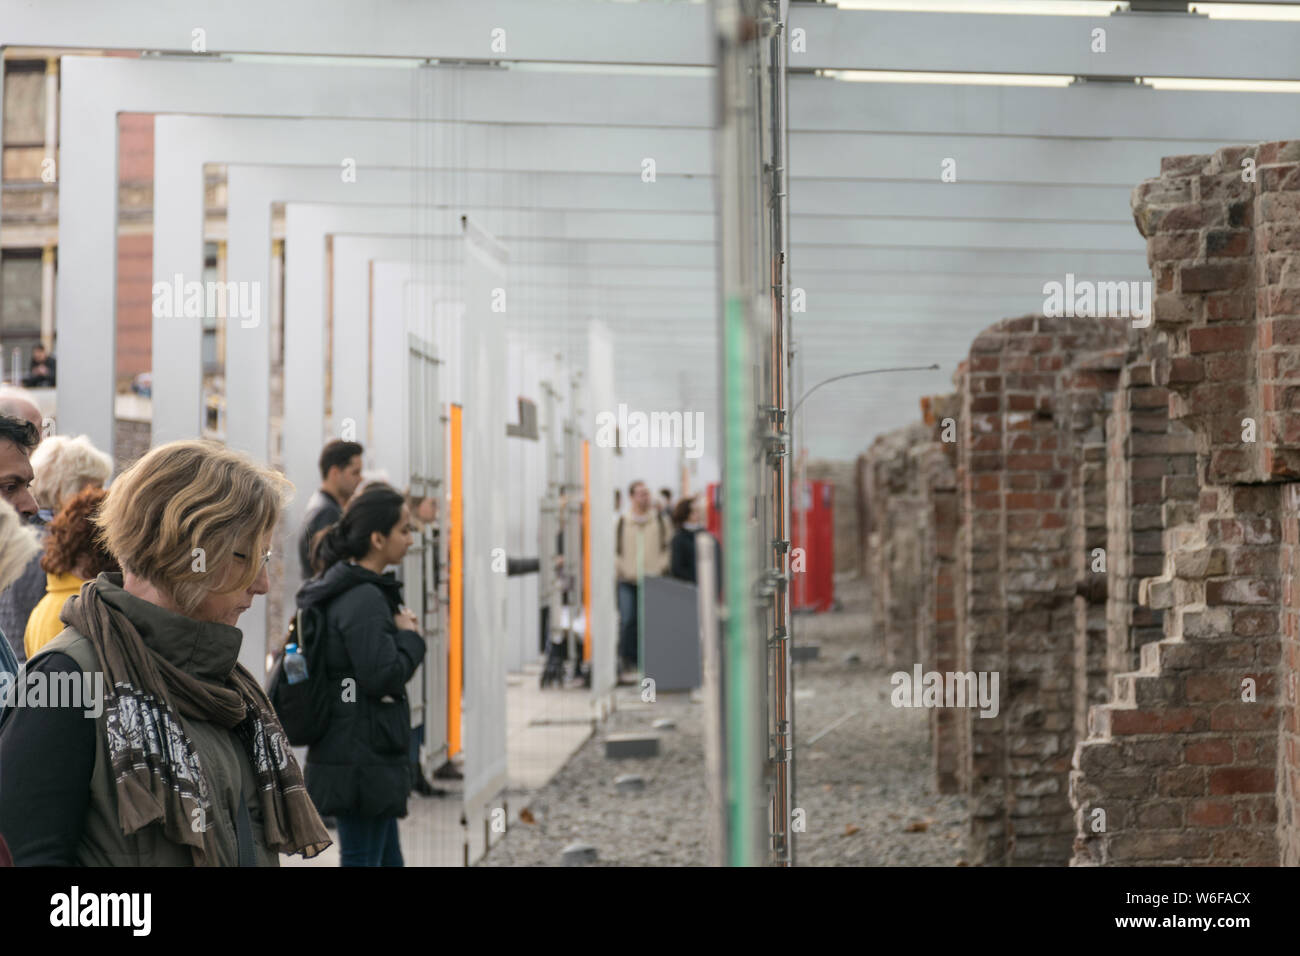 BERLIN, ALEMANIA - 26 de septiembre de 2018: Hacia adentro y perspectiva horizontal de una mujer mirando hacia el exterior y de la exposición temporal "Topografía Foto de stock